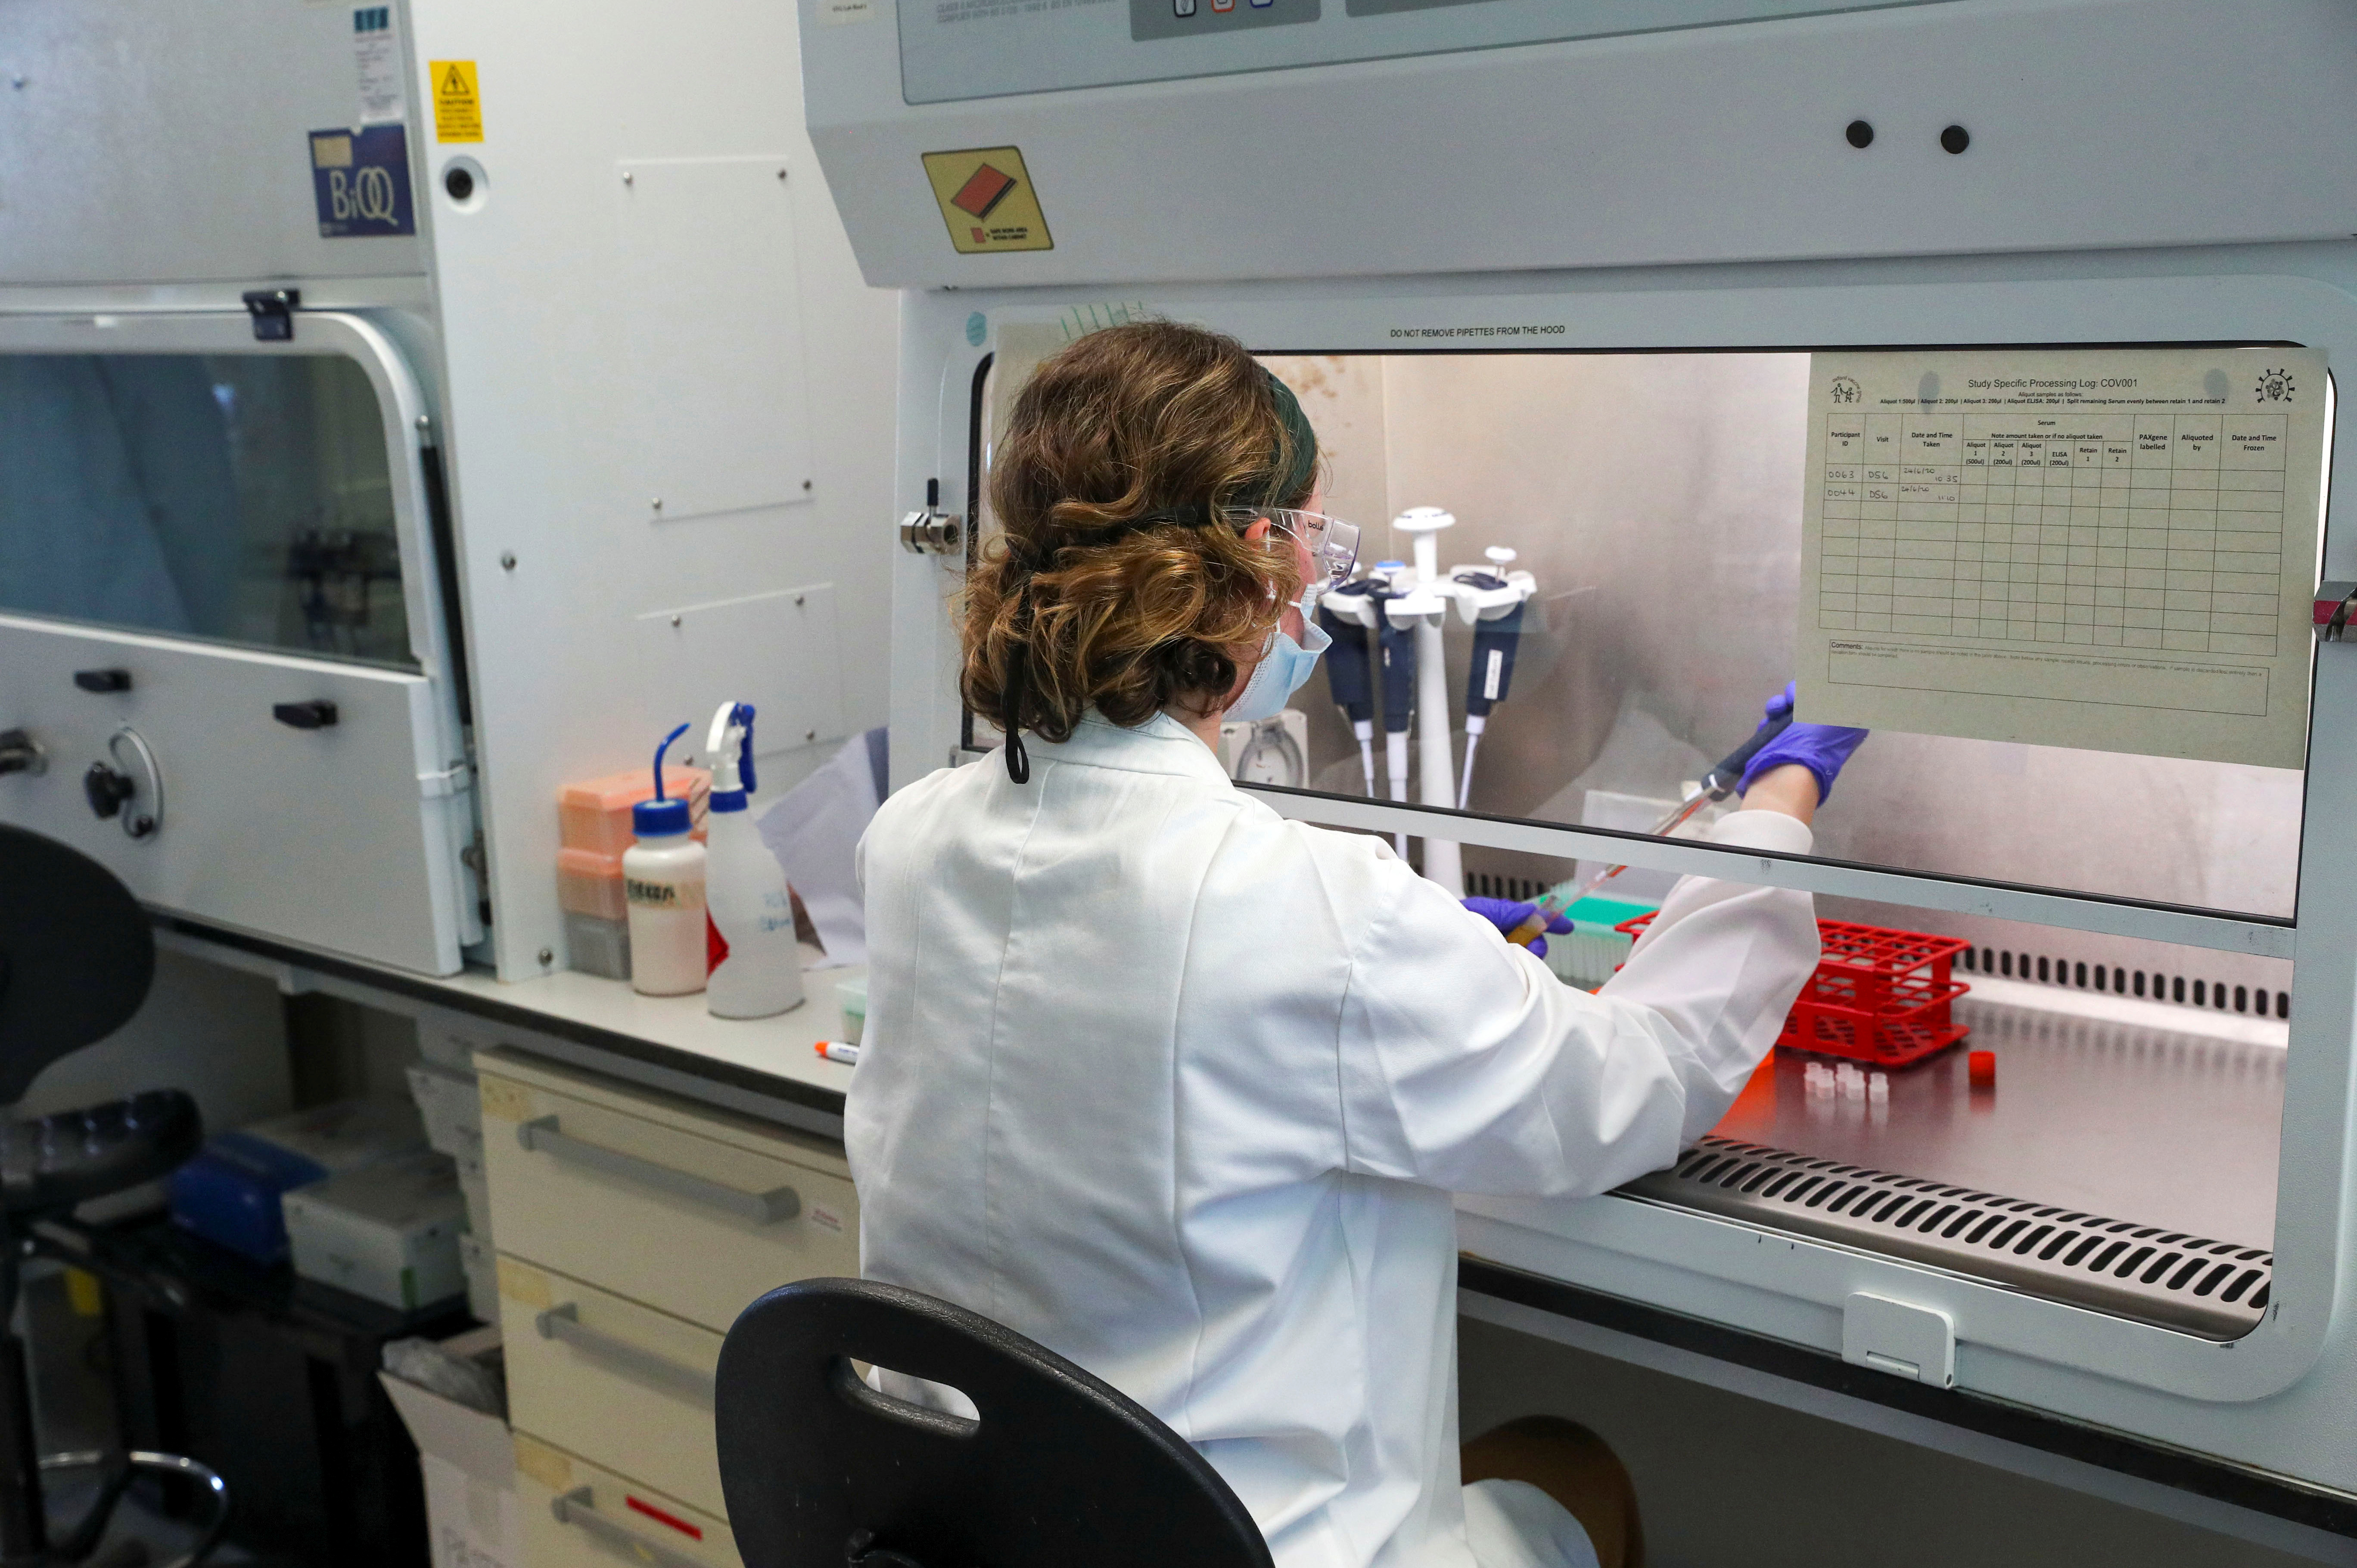 Una científica trabaja en el laboratorio de fabricación donde se ha producido una vacuna contra el coronavirus en el Hospital Churchill de Oxford, el 24 de junio de 2020 (Steve Parsons/Pool vía REUTERS)